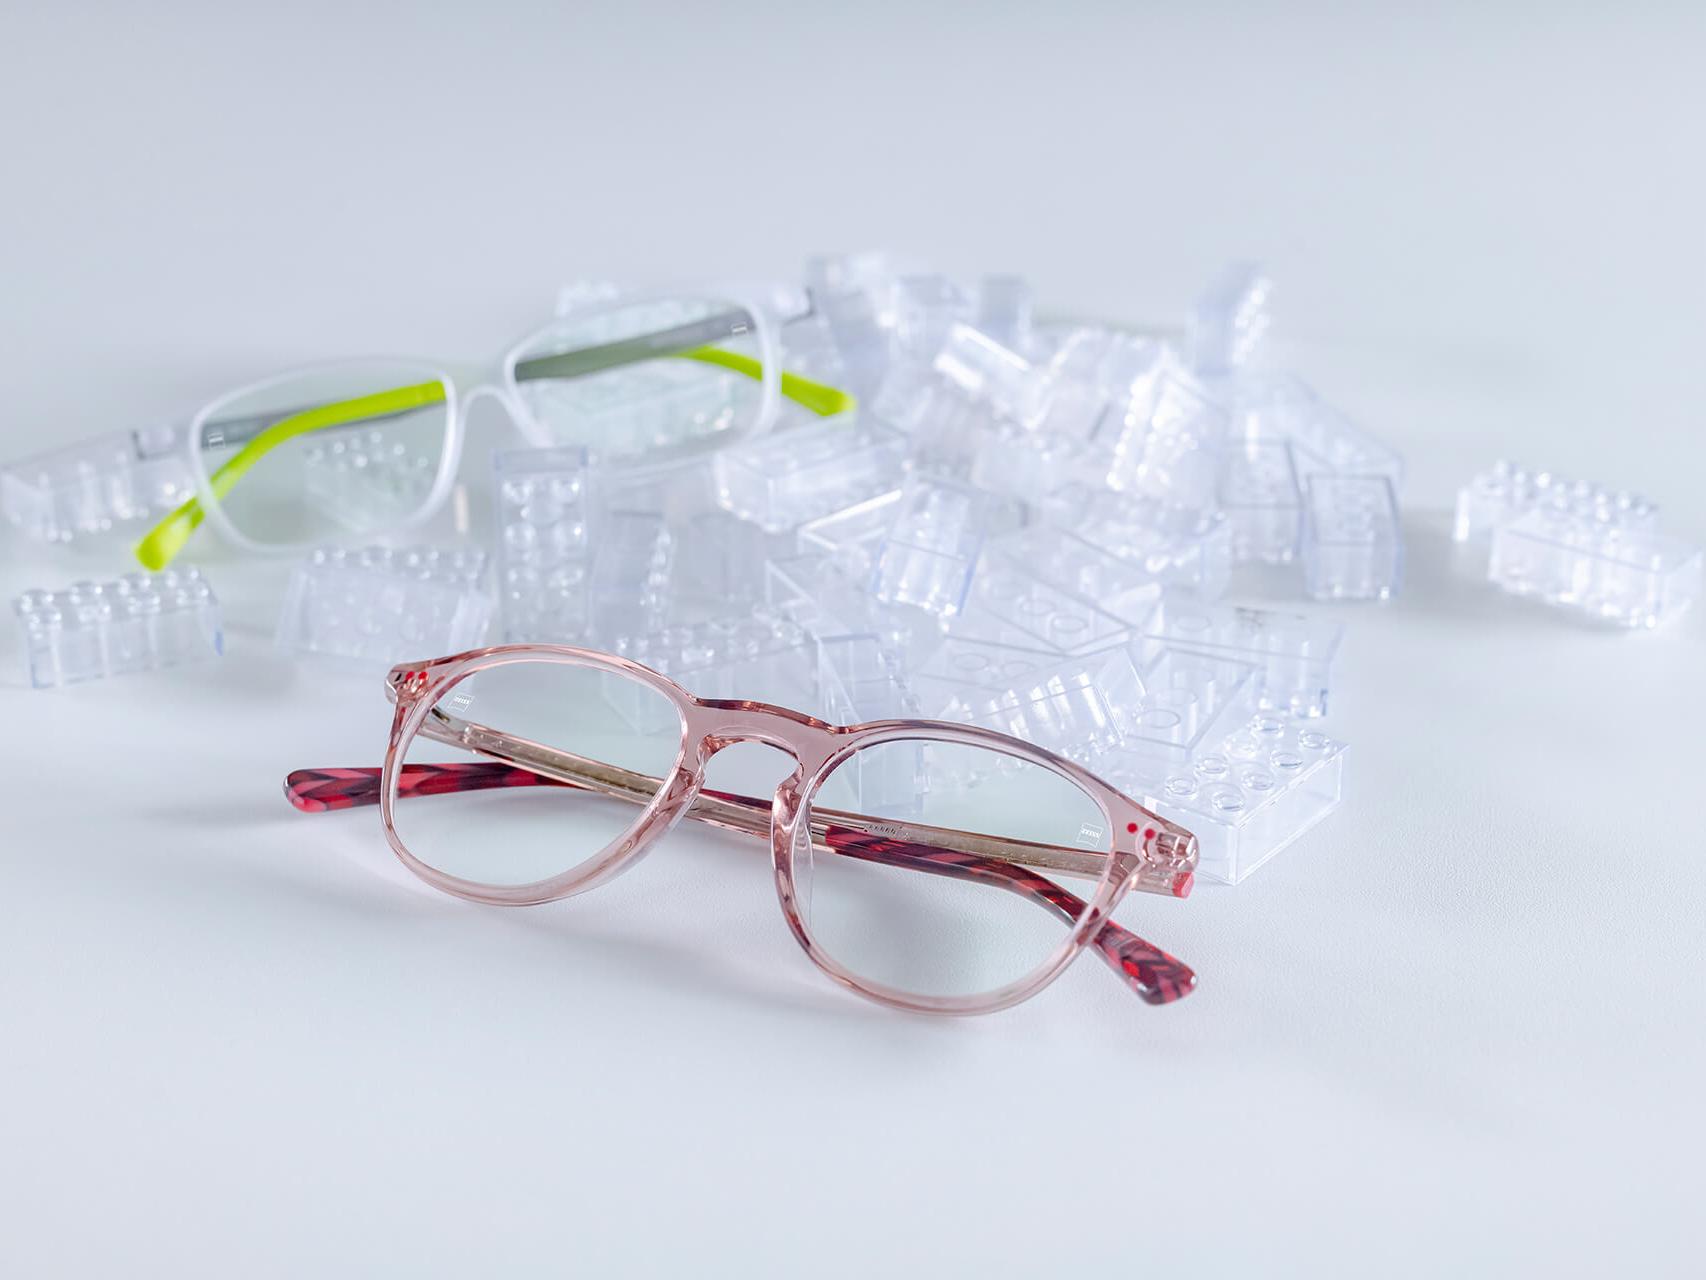 Två par barnglasögon med ZEISS-glas och DuraVision® Kids-ytbehandlingar. Glasögonen ligger bland transparenta lekklossar.